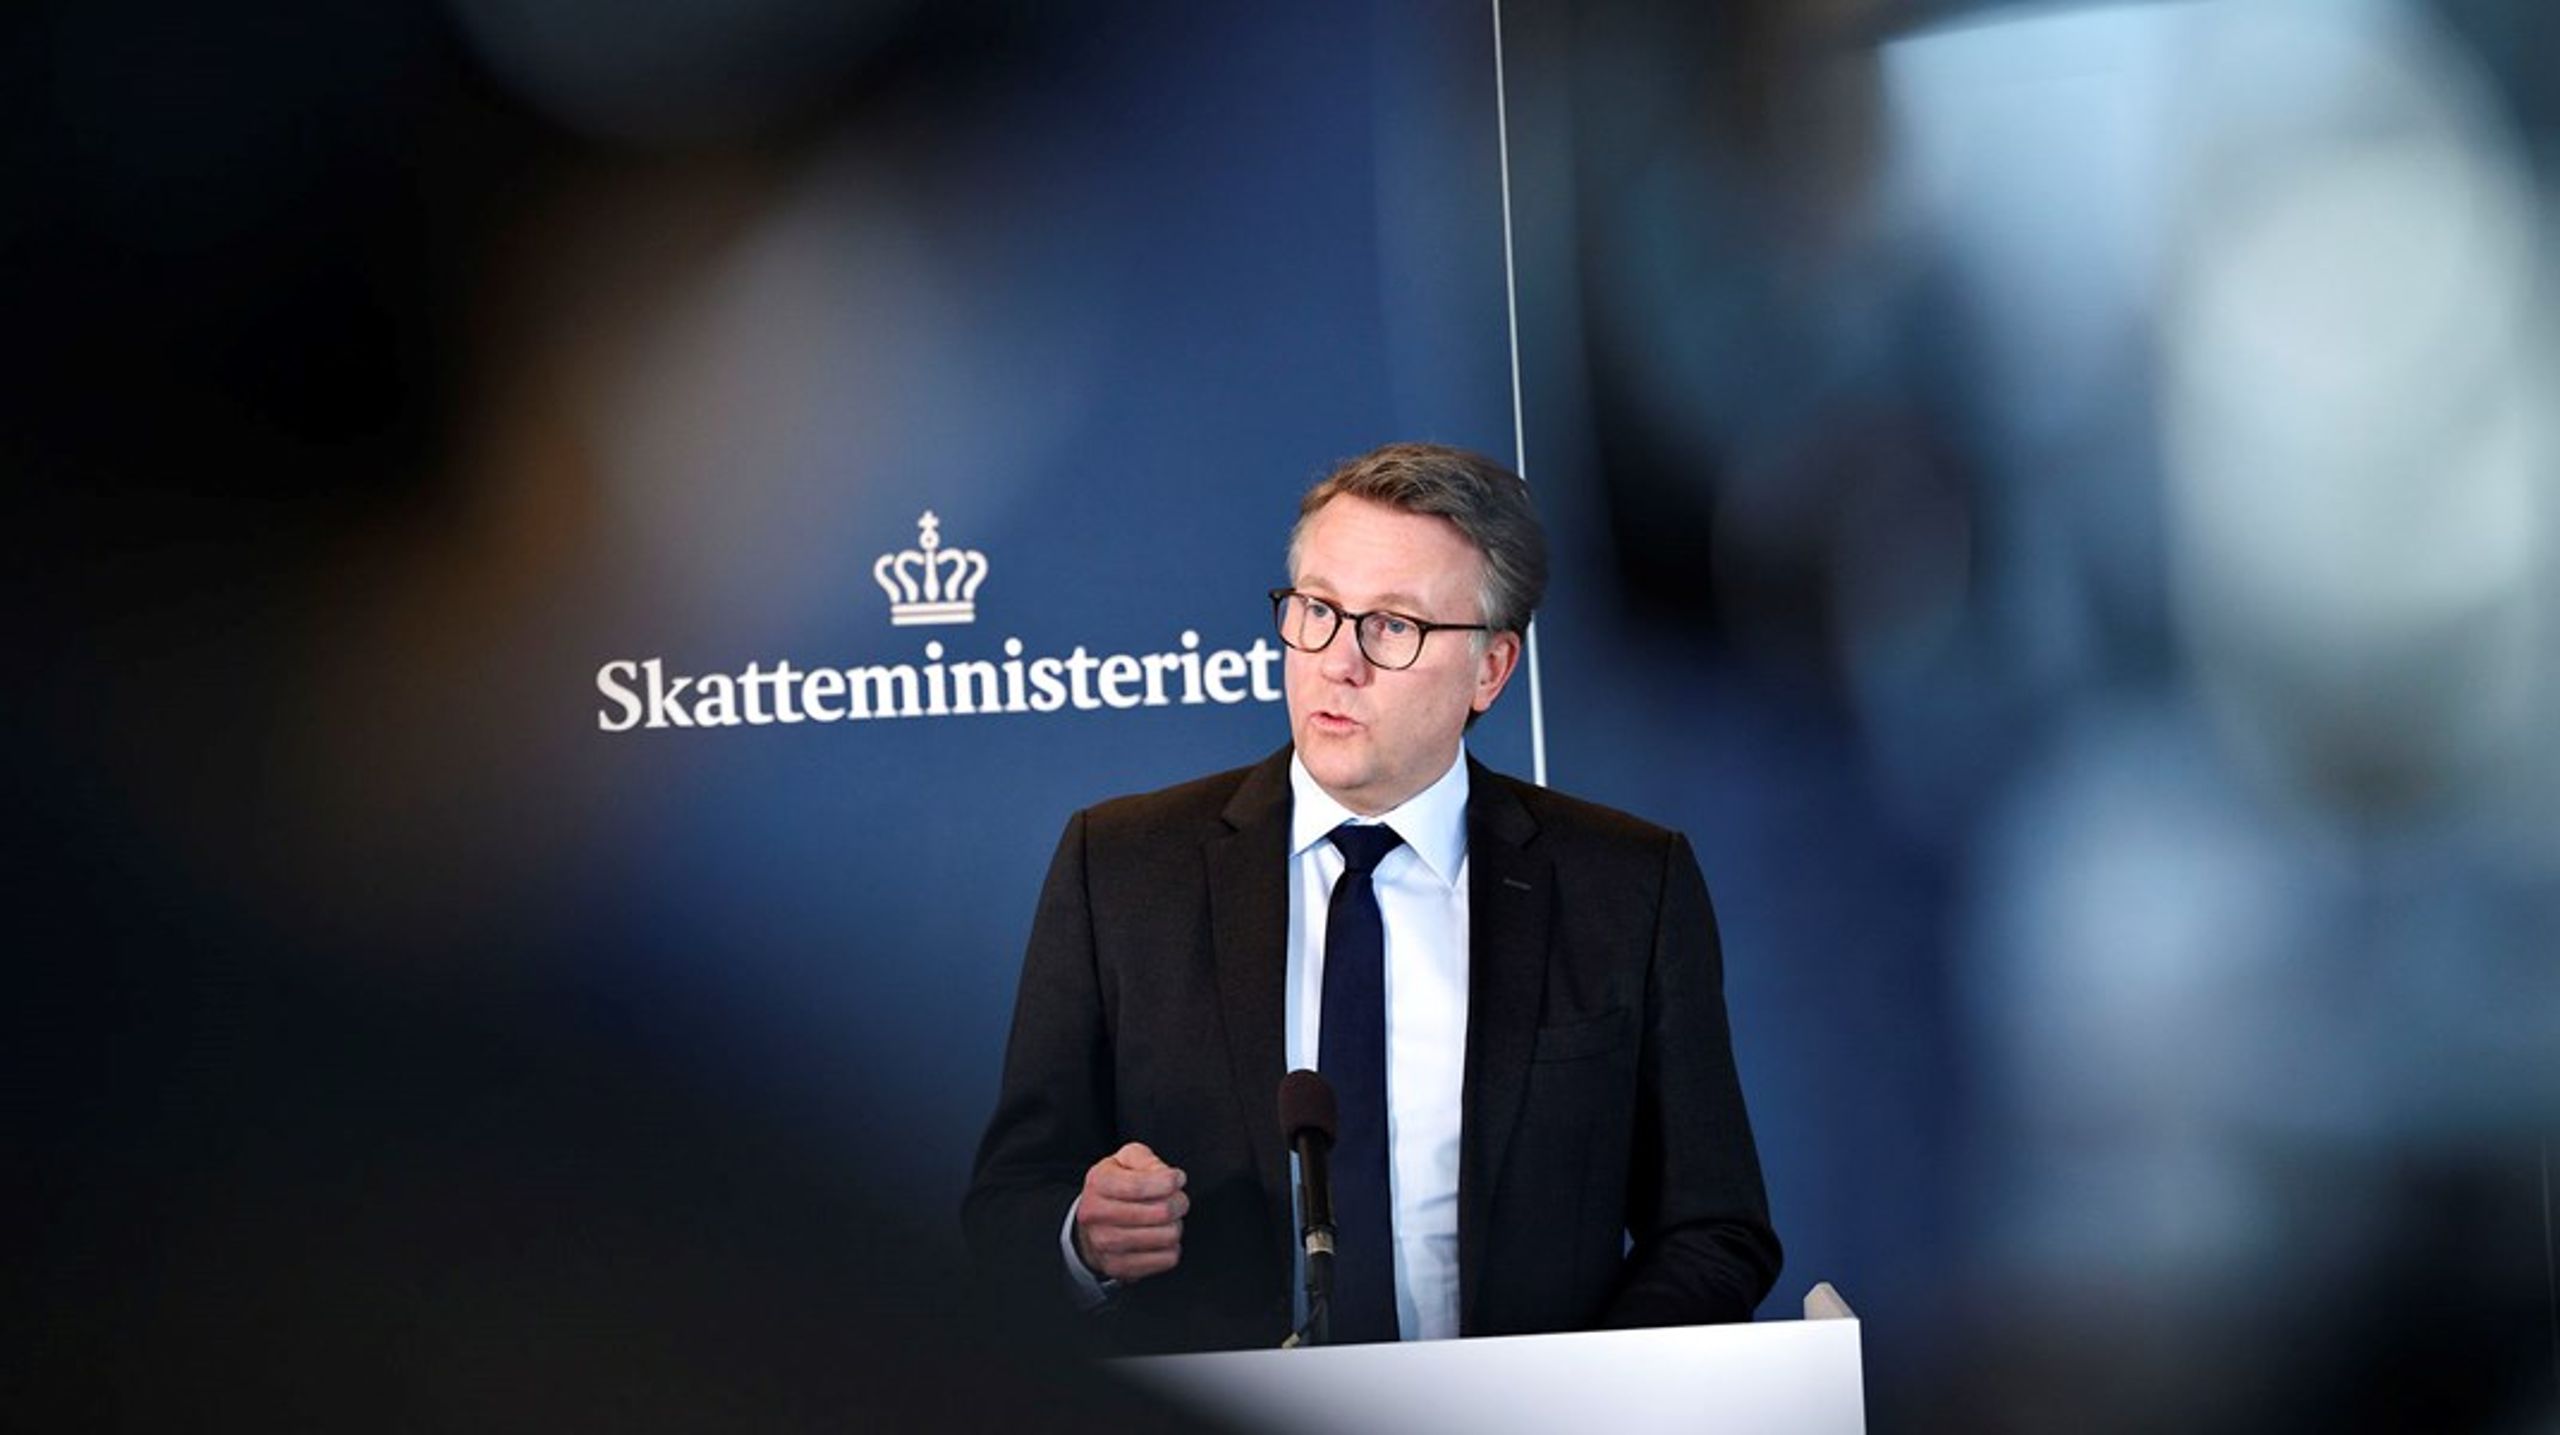 Skatteminister Morten Bødskov&nbsp;har fået embedsværkets hjælp i forbindelse med møderne i Socialdemokratiets erhvervsklub.